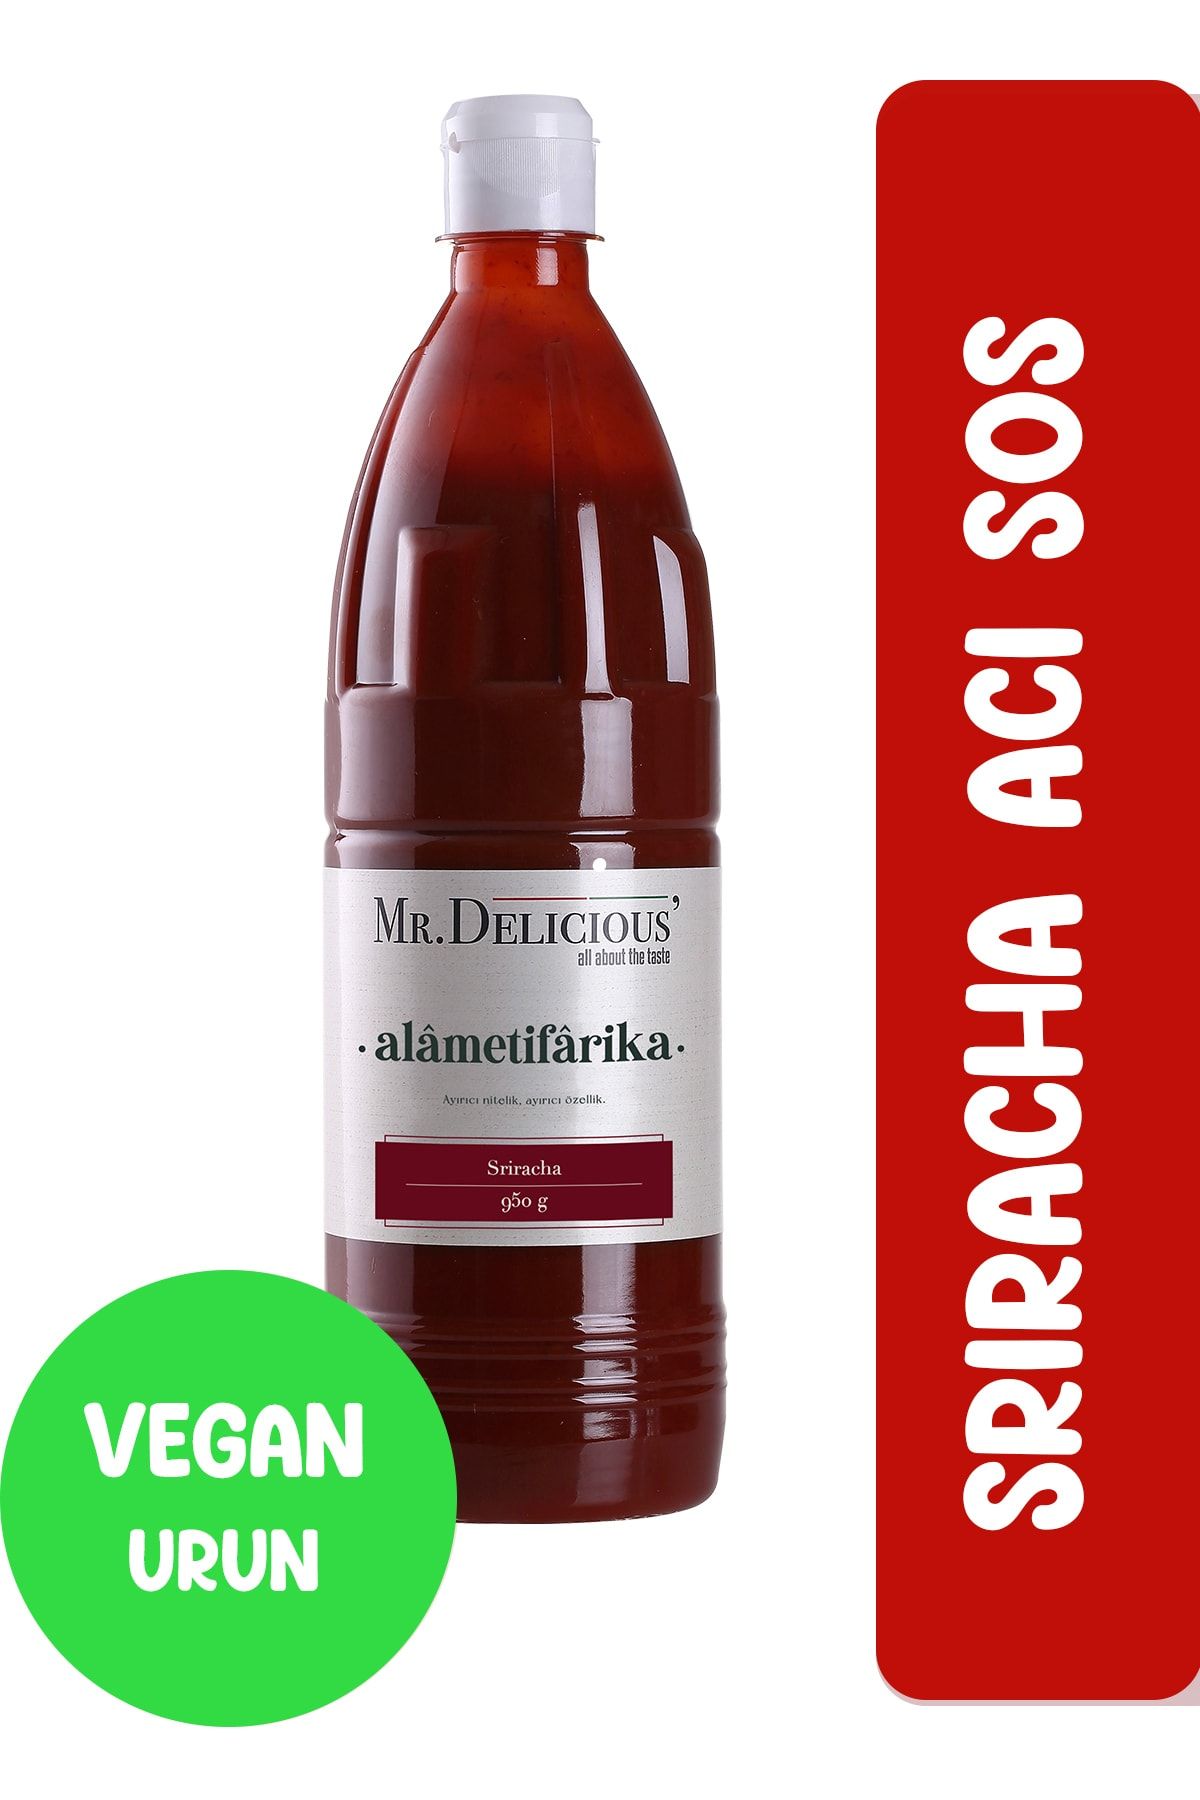 Mr.Delicious' Sriracha Acı Sos 950gr